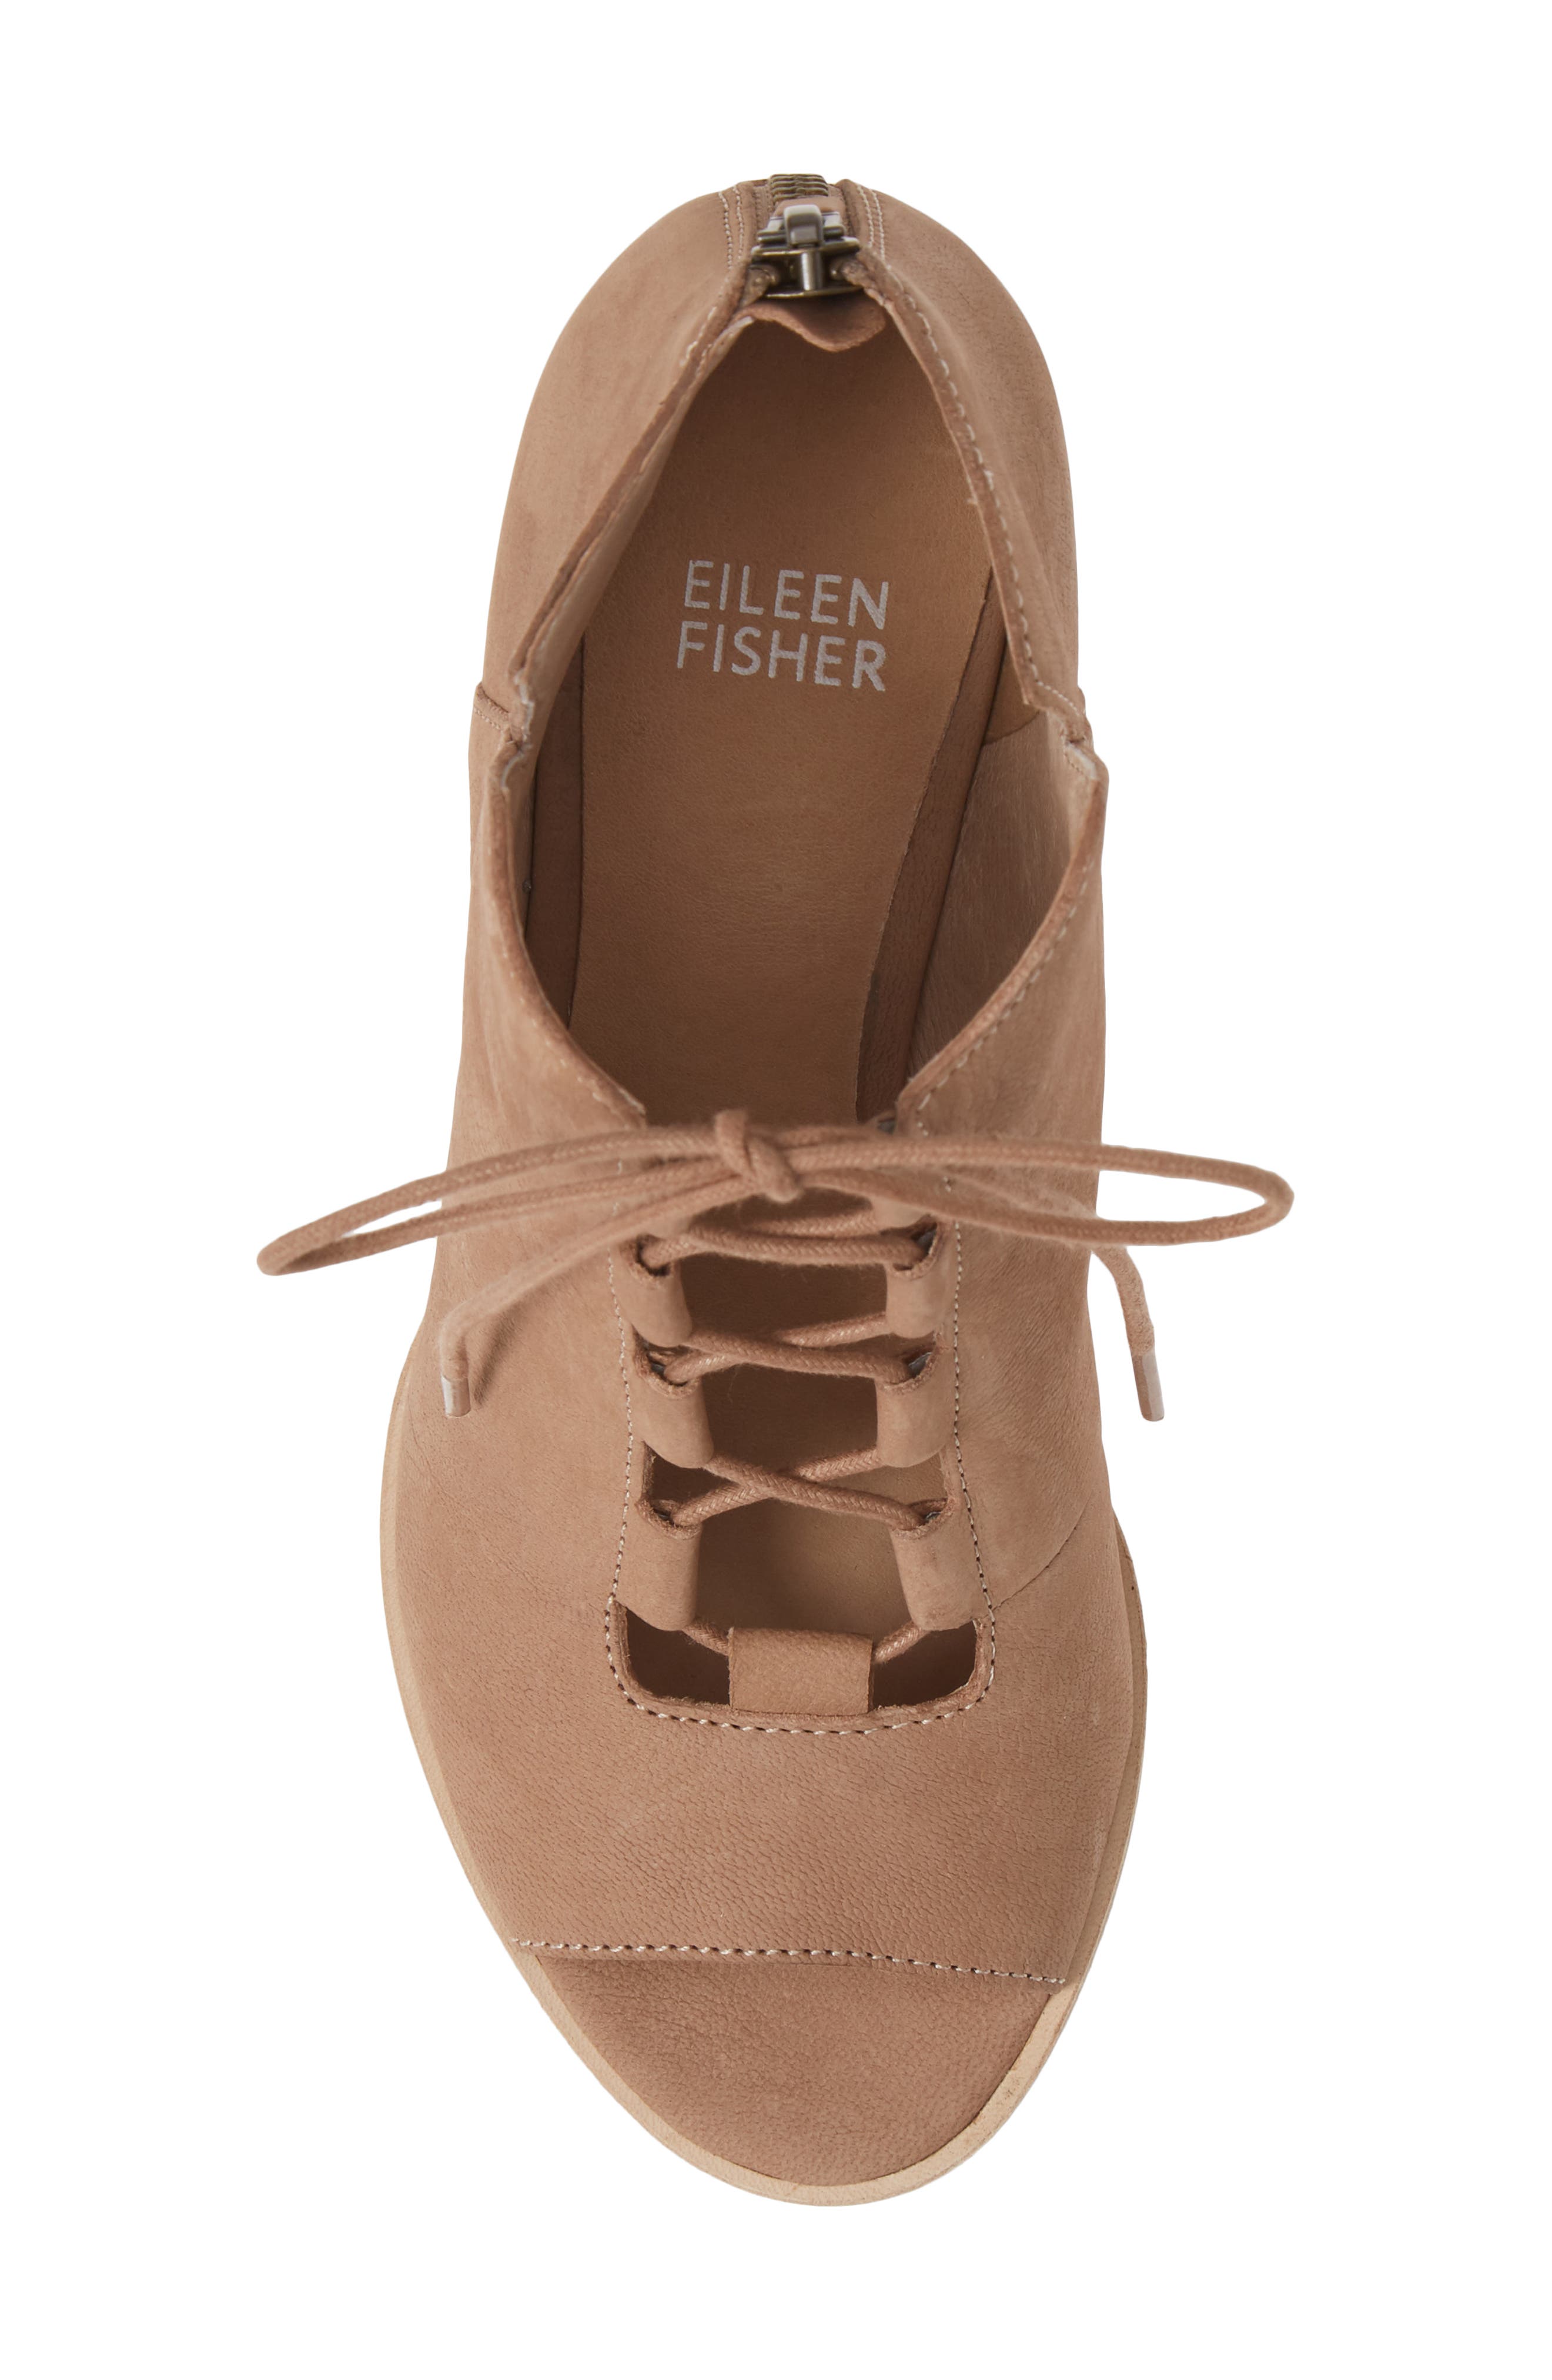 Eileen Fisher | Fallon Open Toe Bootie 